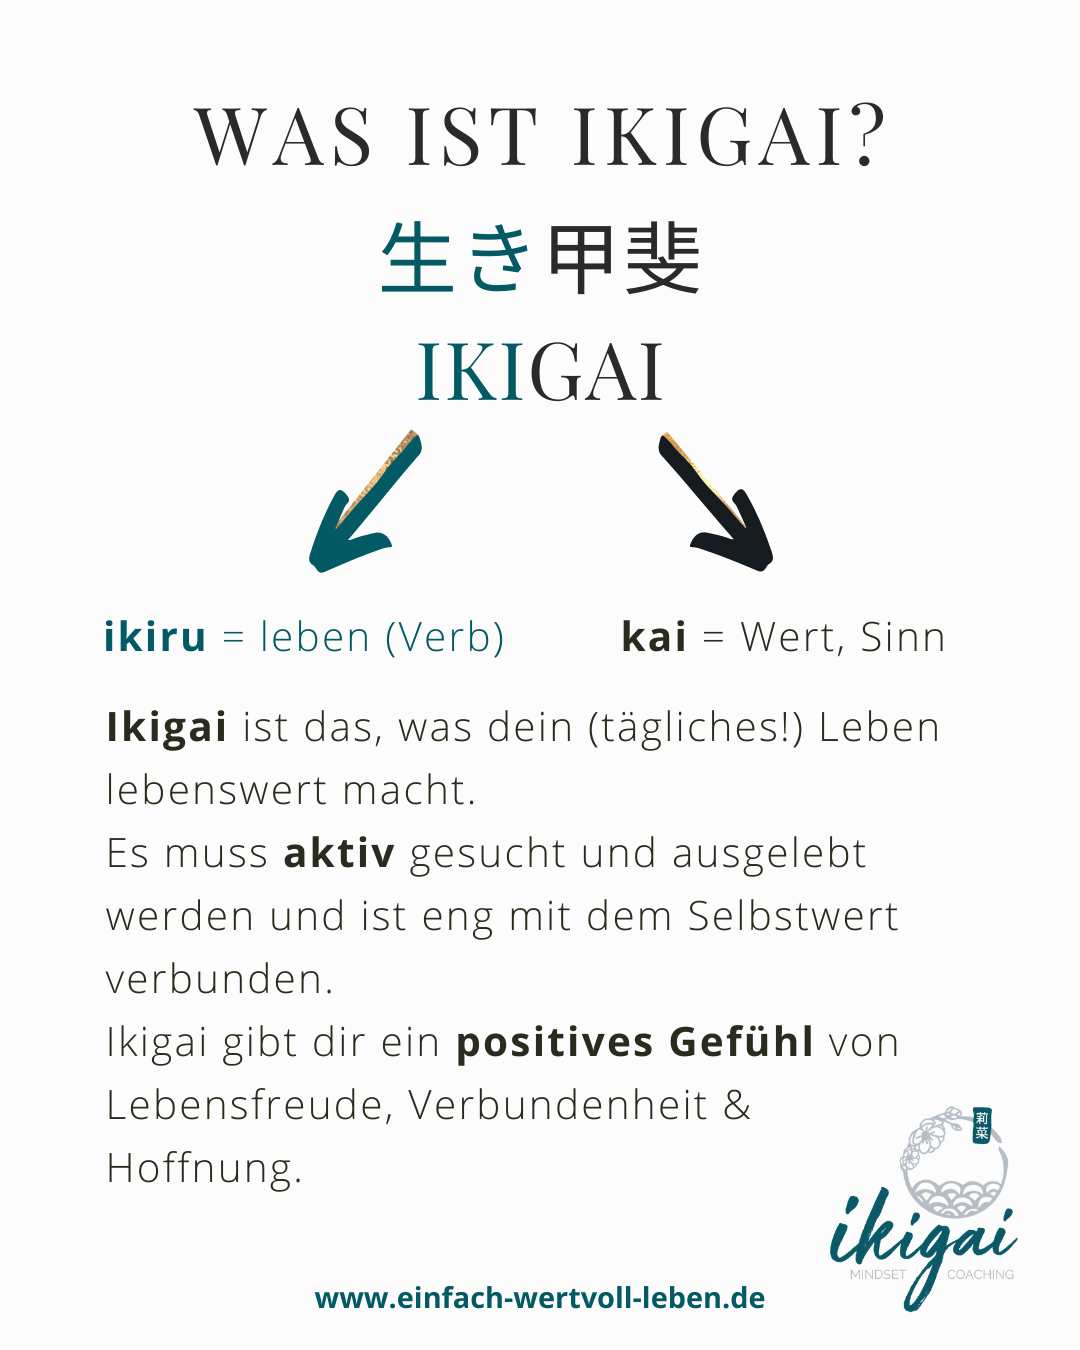 Das japanische Ikigai ist das, was dein tägliches Leben lebenswert macht. Es muss aktiv gesucht werden und ist eng mit dem Selbstwert verbunden. Ikigai gibt dir ein positives Gefühl von Lebensfreude, Hoffnung und Verbundenheit.